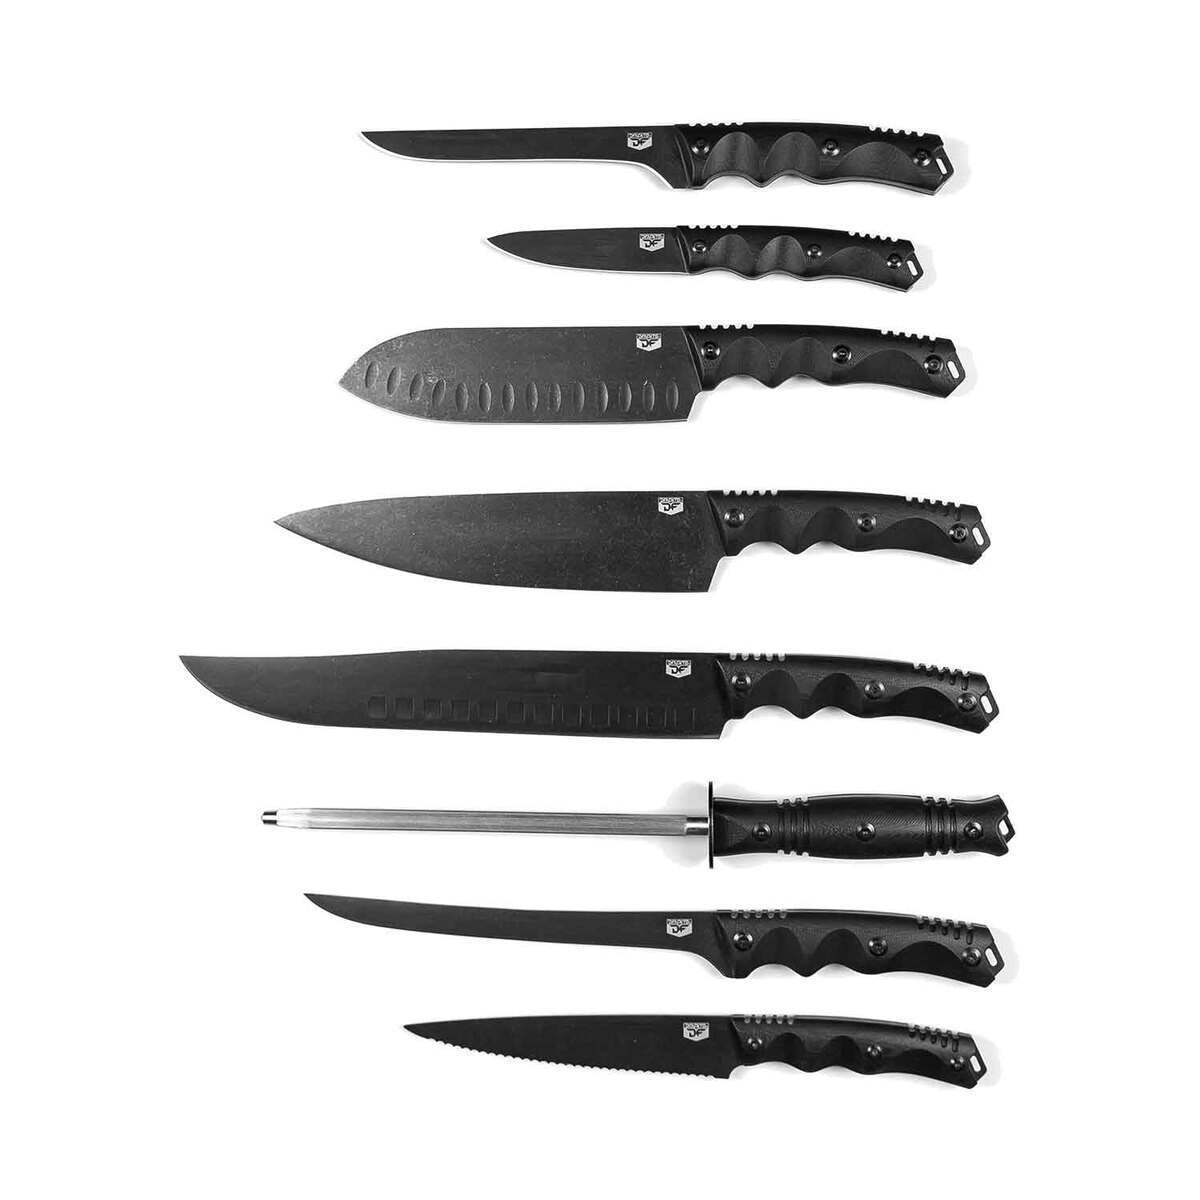 https://www.knives.com/medias/dfackto-basecamp-knife-set-black-1718264-1.jpg?context=bWFzdGVyfGltYWdlc3w1NTA3NXxpbWFnZS9qcGVnfGg0Yi9oMzYvMTAzOTQxNjU5Njg5MjYvMTcxODI2NC0xX2Jhc2UtY29udmVyc2lvbkZvcm1hdF8xMjAwLWNvbnZlcnNpb25Gb3JtYXR8M2YxNDhjOTc0NzlhMWIzZmM2YjNkNmQ2ZTZiOTdjM2U3ZDQxNWQxZGU0NjJjOTM4NmNjMDg3ZGUwYzZmYjQ2NQ